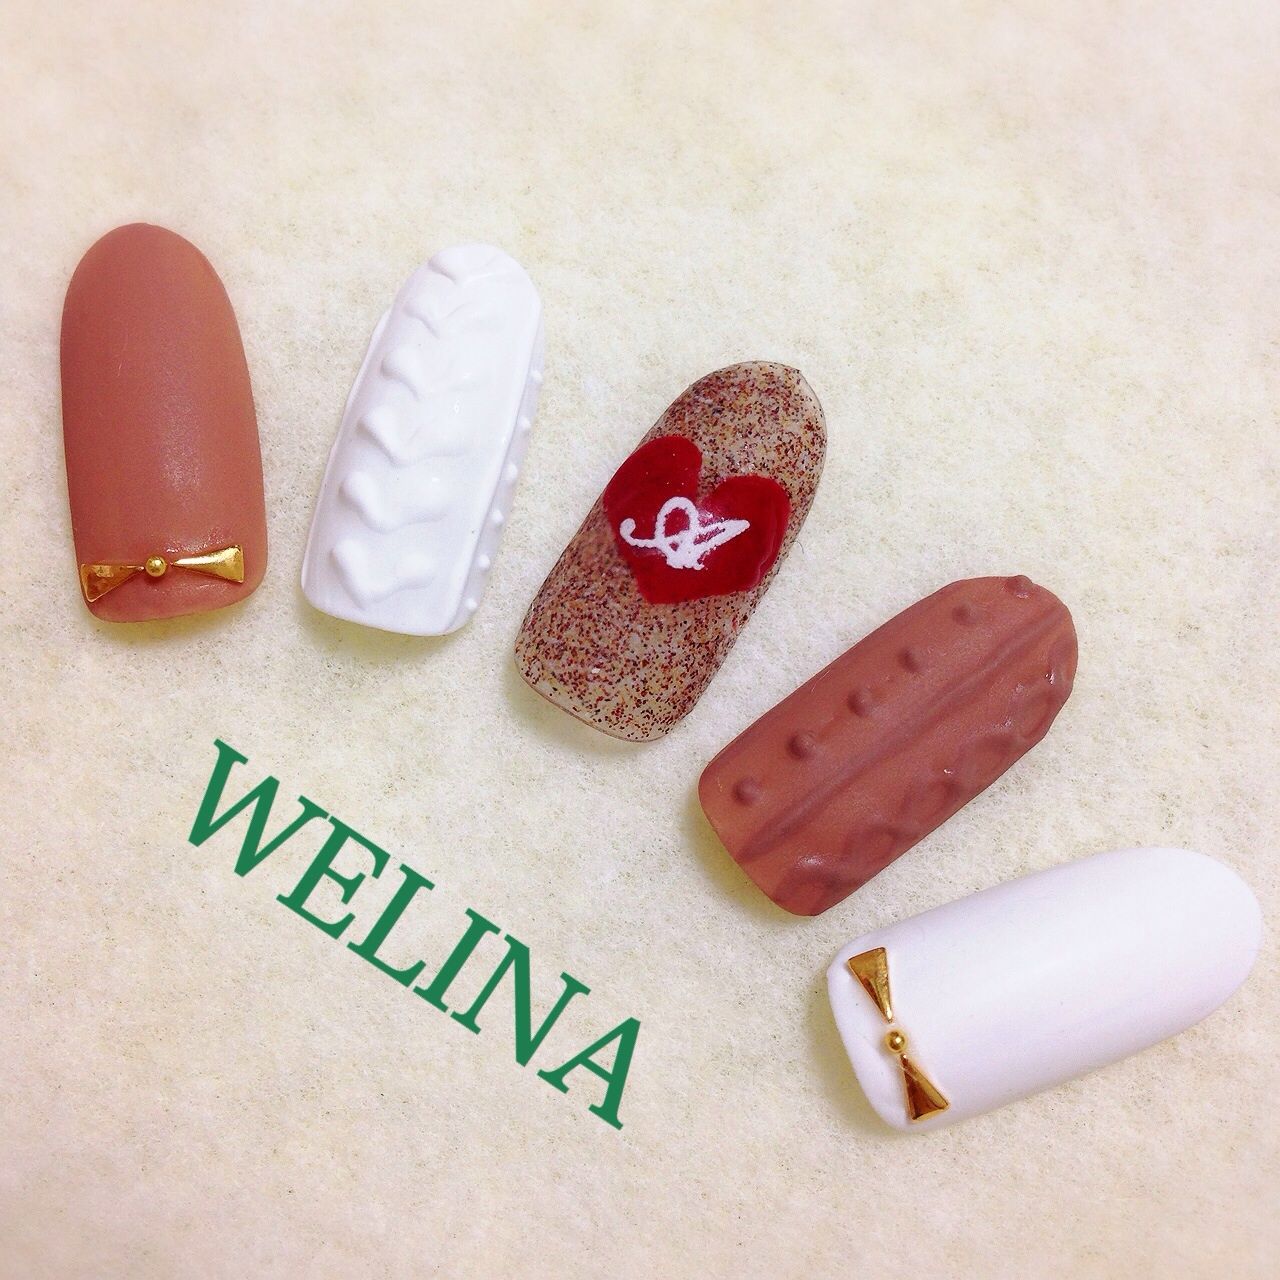 WELINA  nail & jewelry